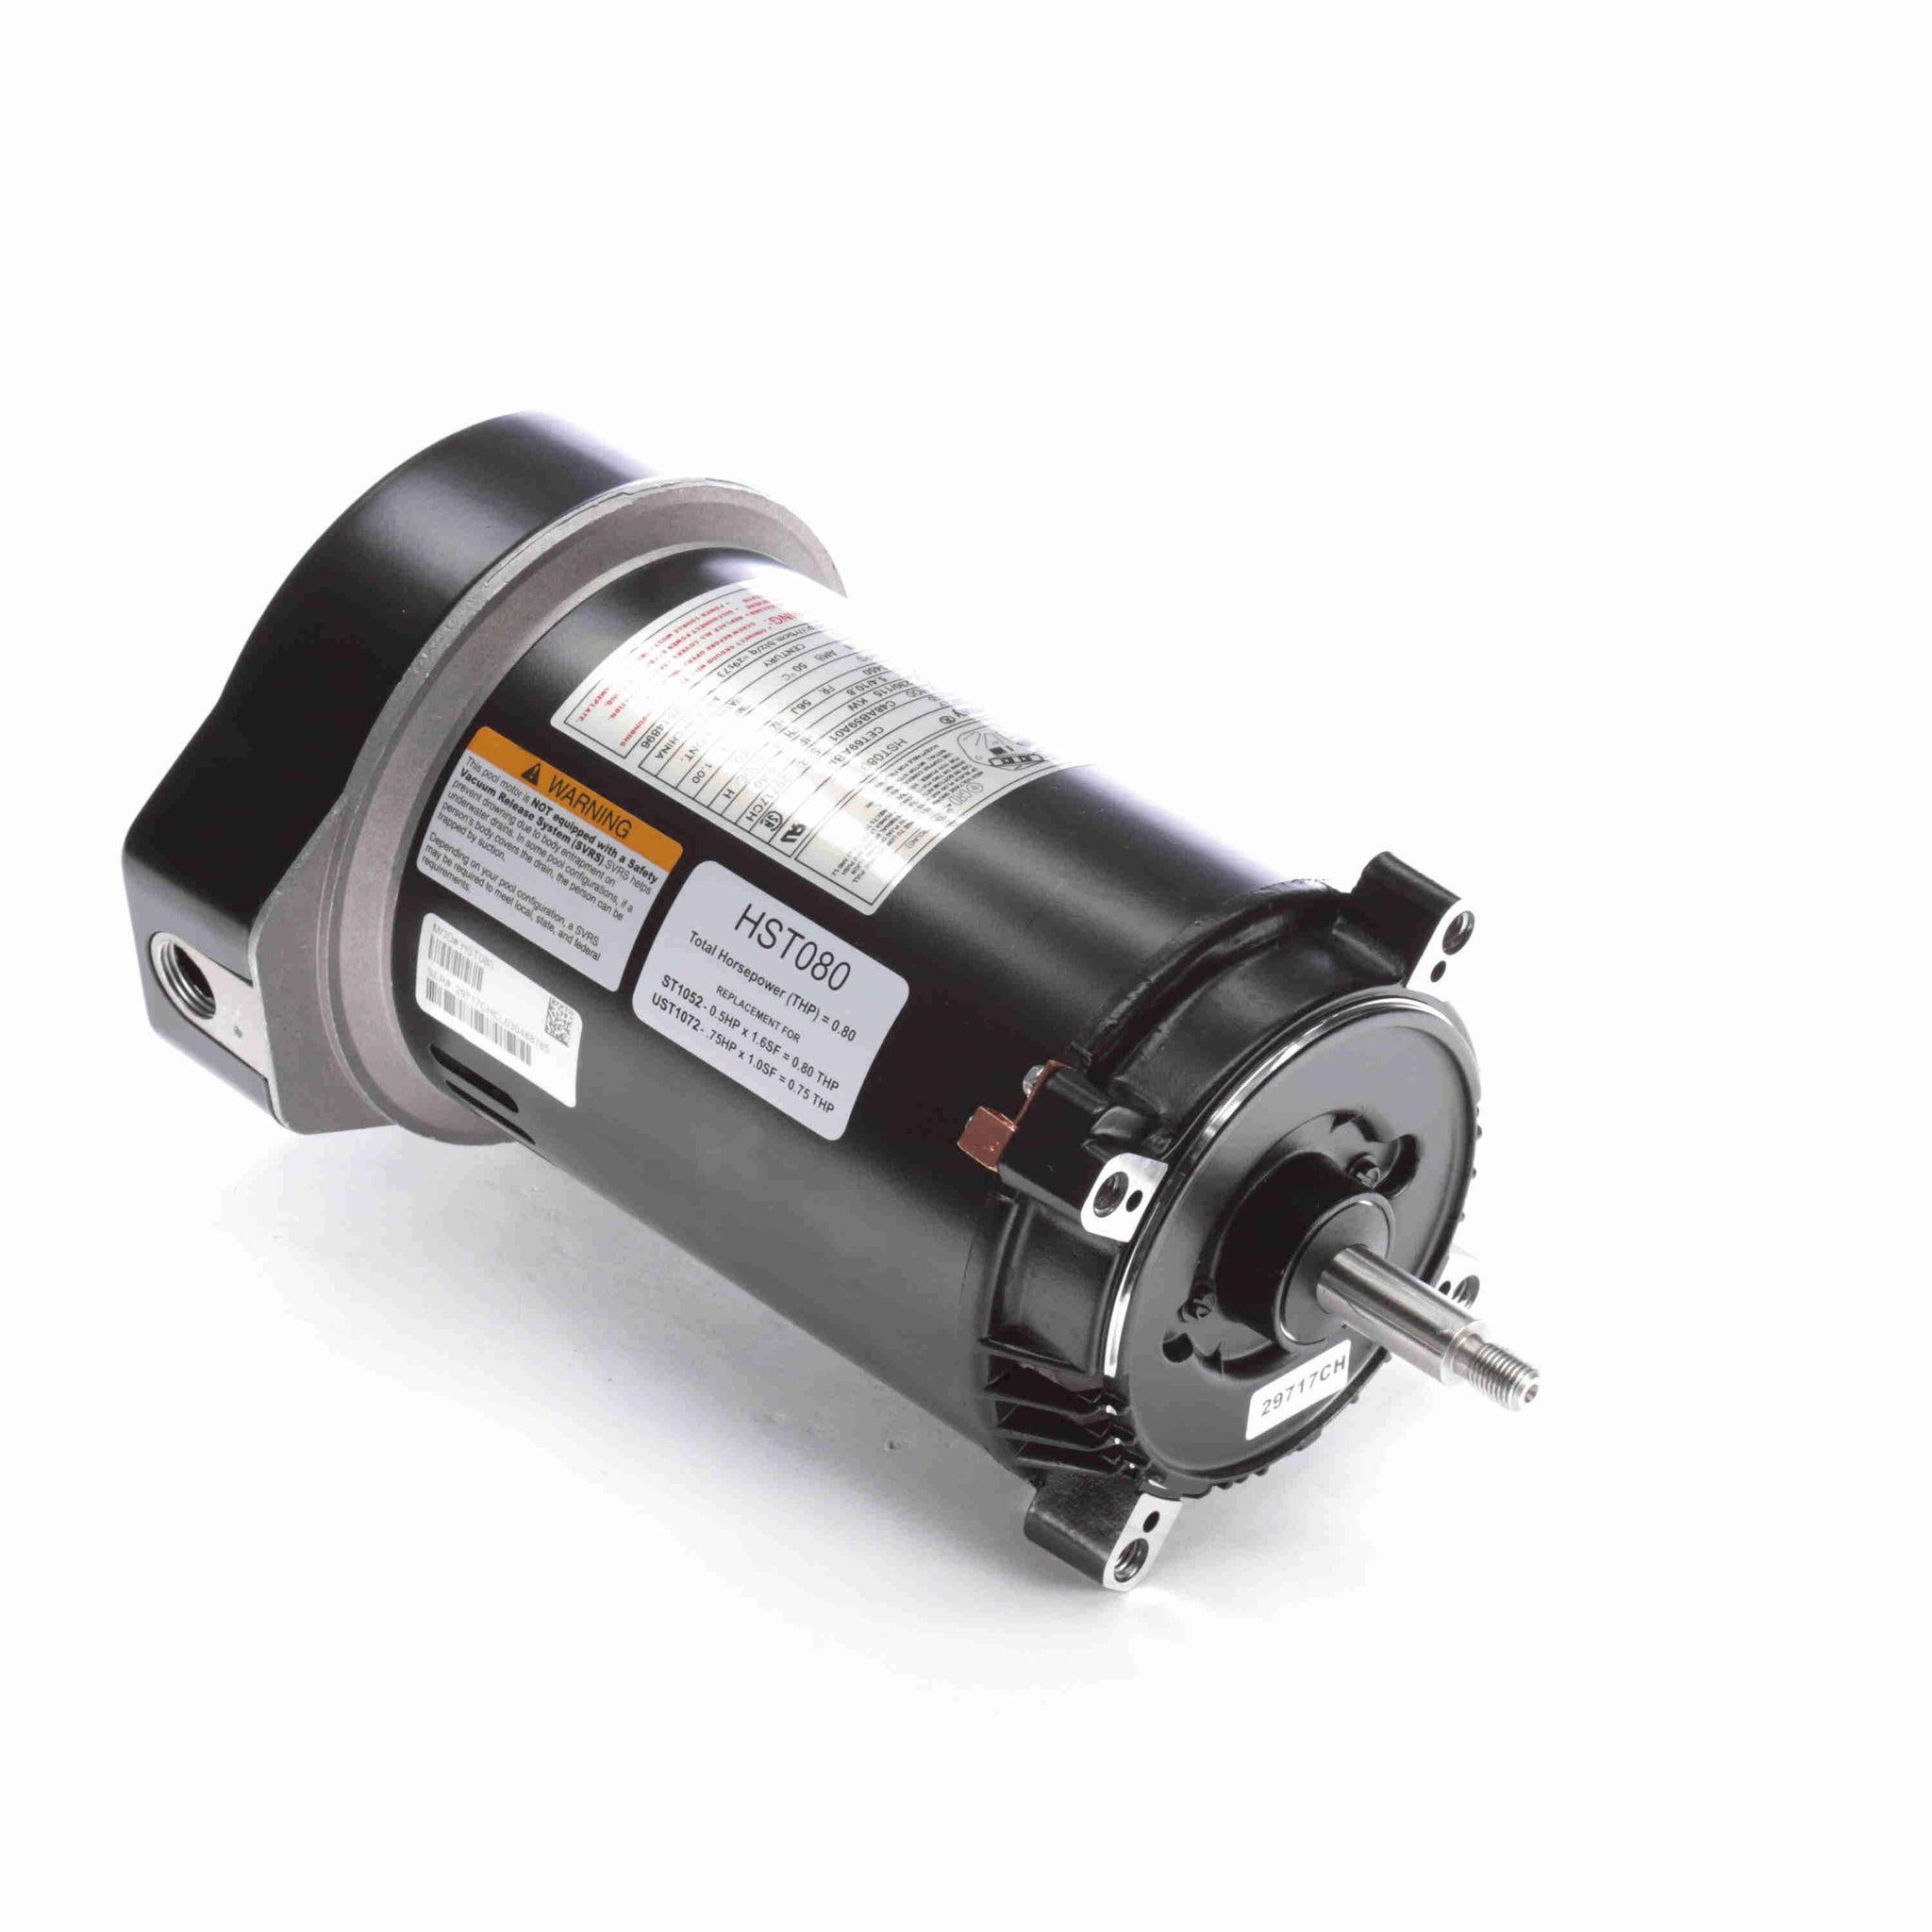 HST080 - 0.80 HP Pool Pump Motor, 1 phase, 3600 RPM, 230/115 V, 56J Frame, ODP - Hardware & Moreee